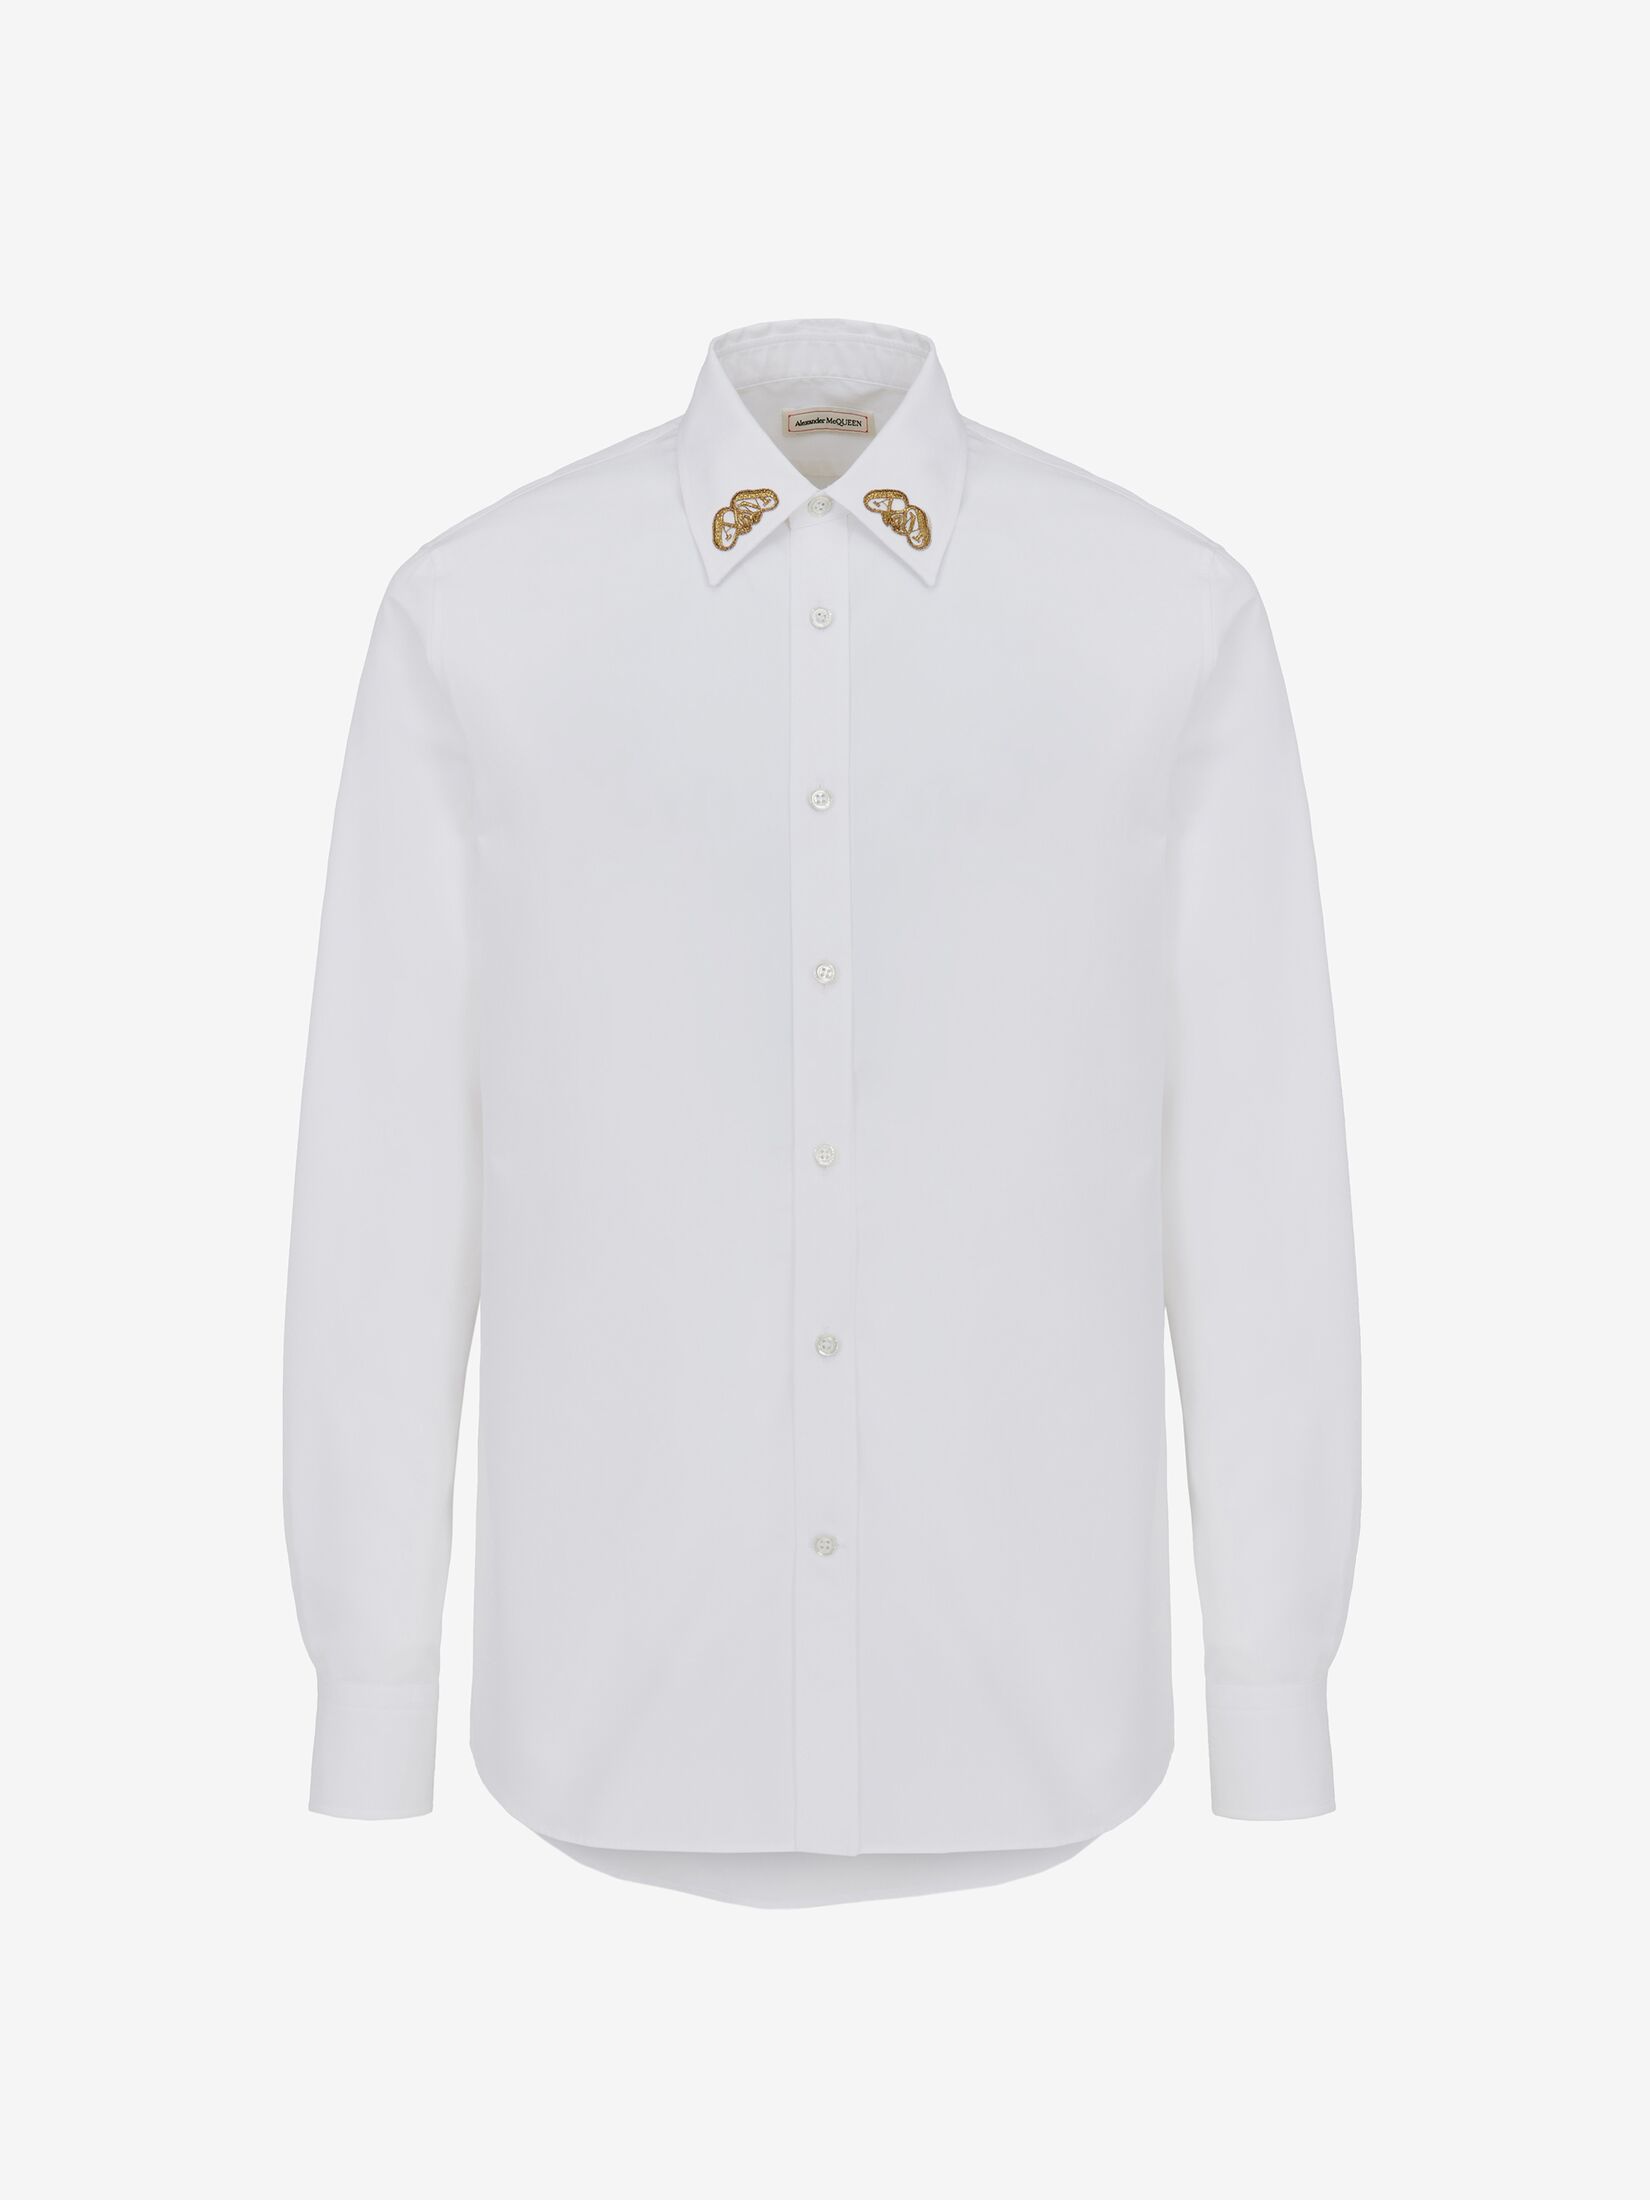 Alexander McQueen flap pockets buttoned shirt - White